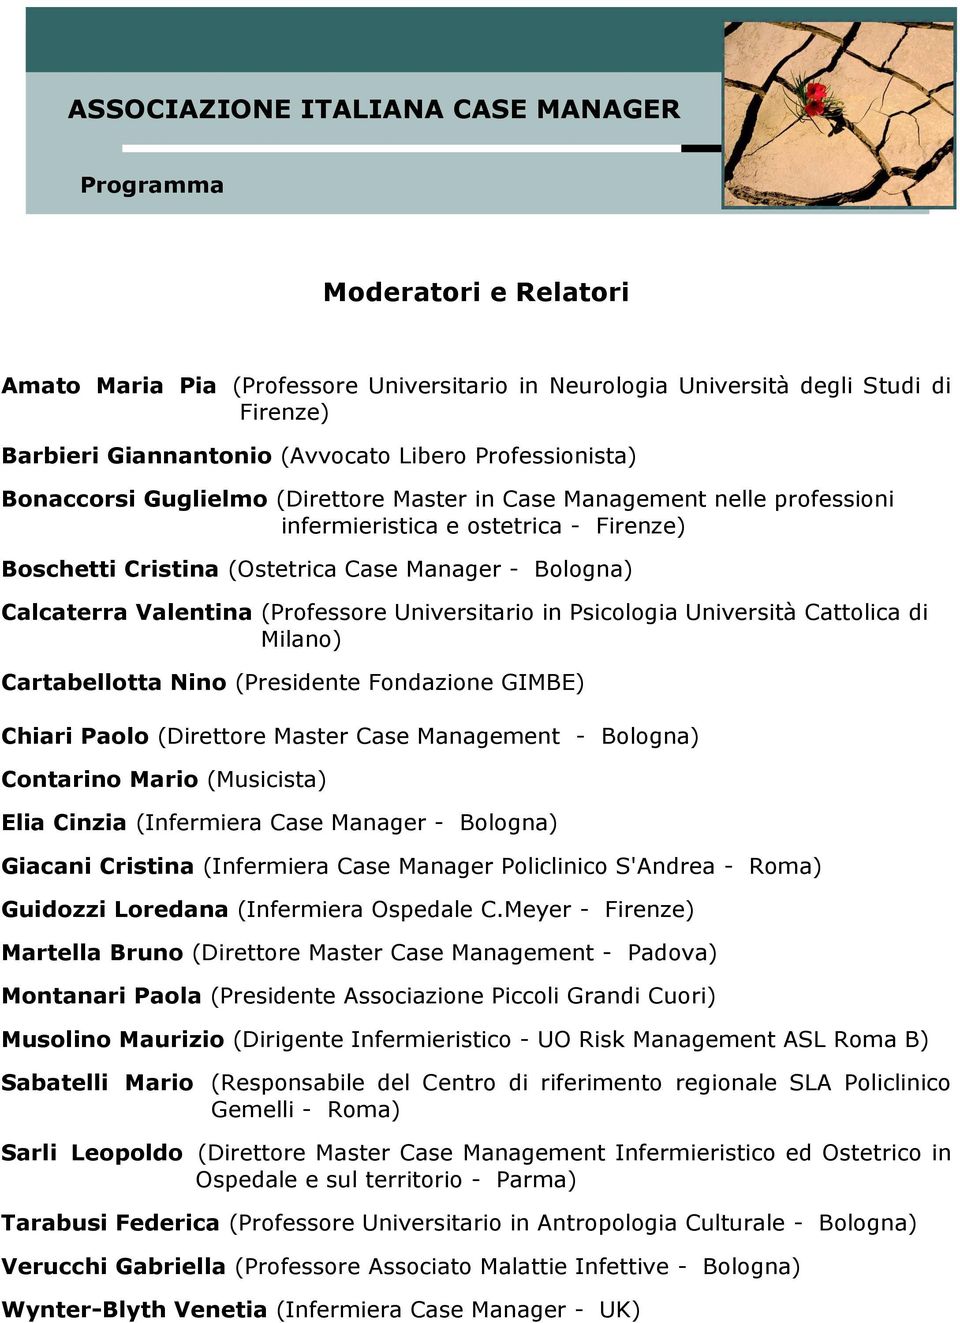 Università Cattolica di Milano) Cartabellotta Nino (Presidente Fondazione GIMBE) Chiari Paolo (Direttore Master Case Management - Bologna) Contarino Mario (Musicista) Elia Cinzia (Infermiera Case